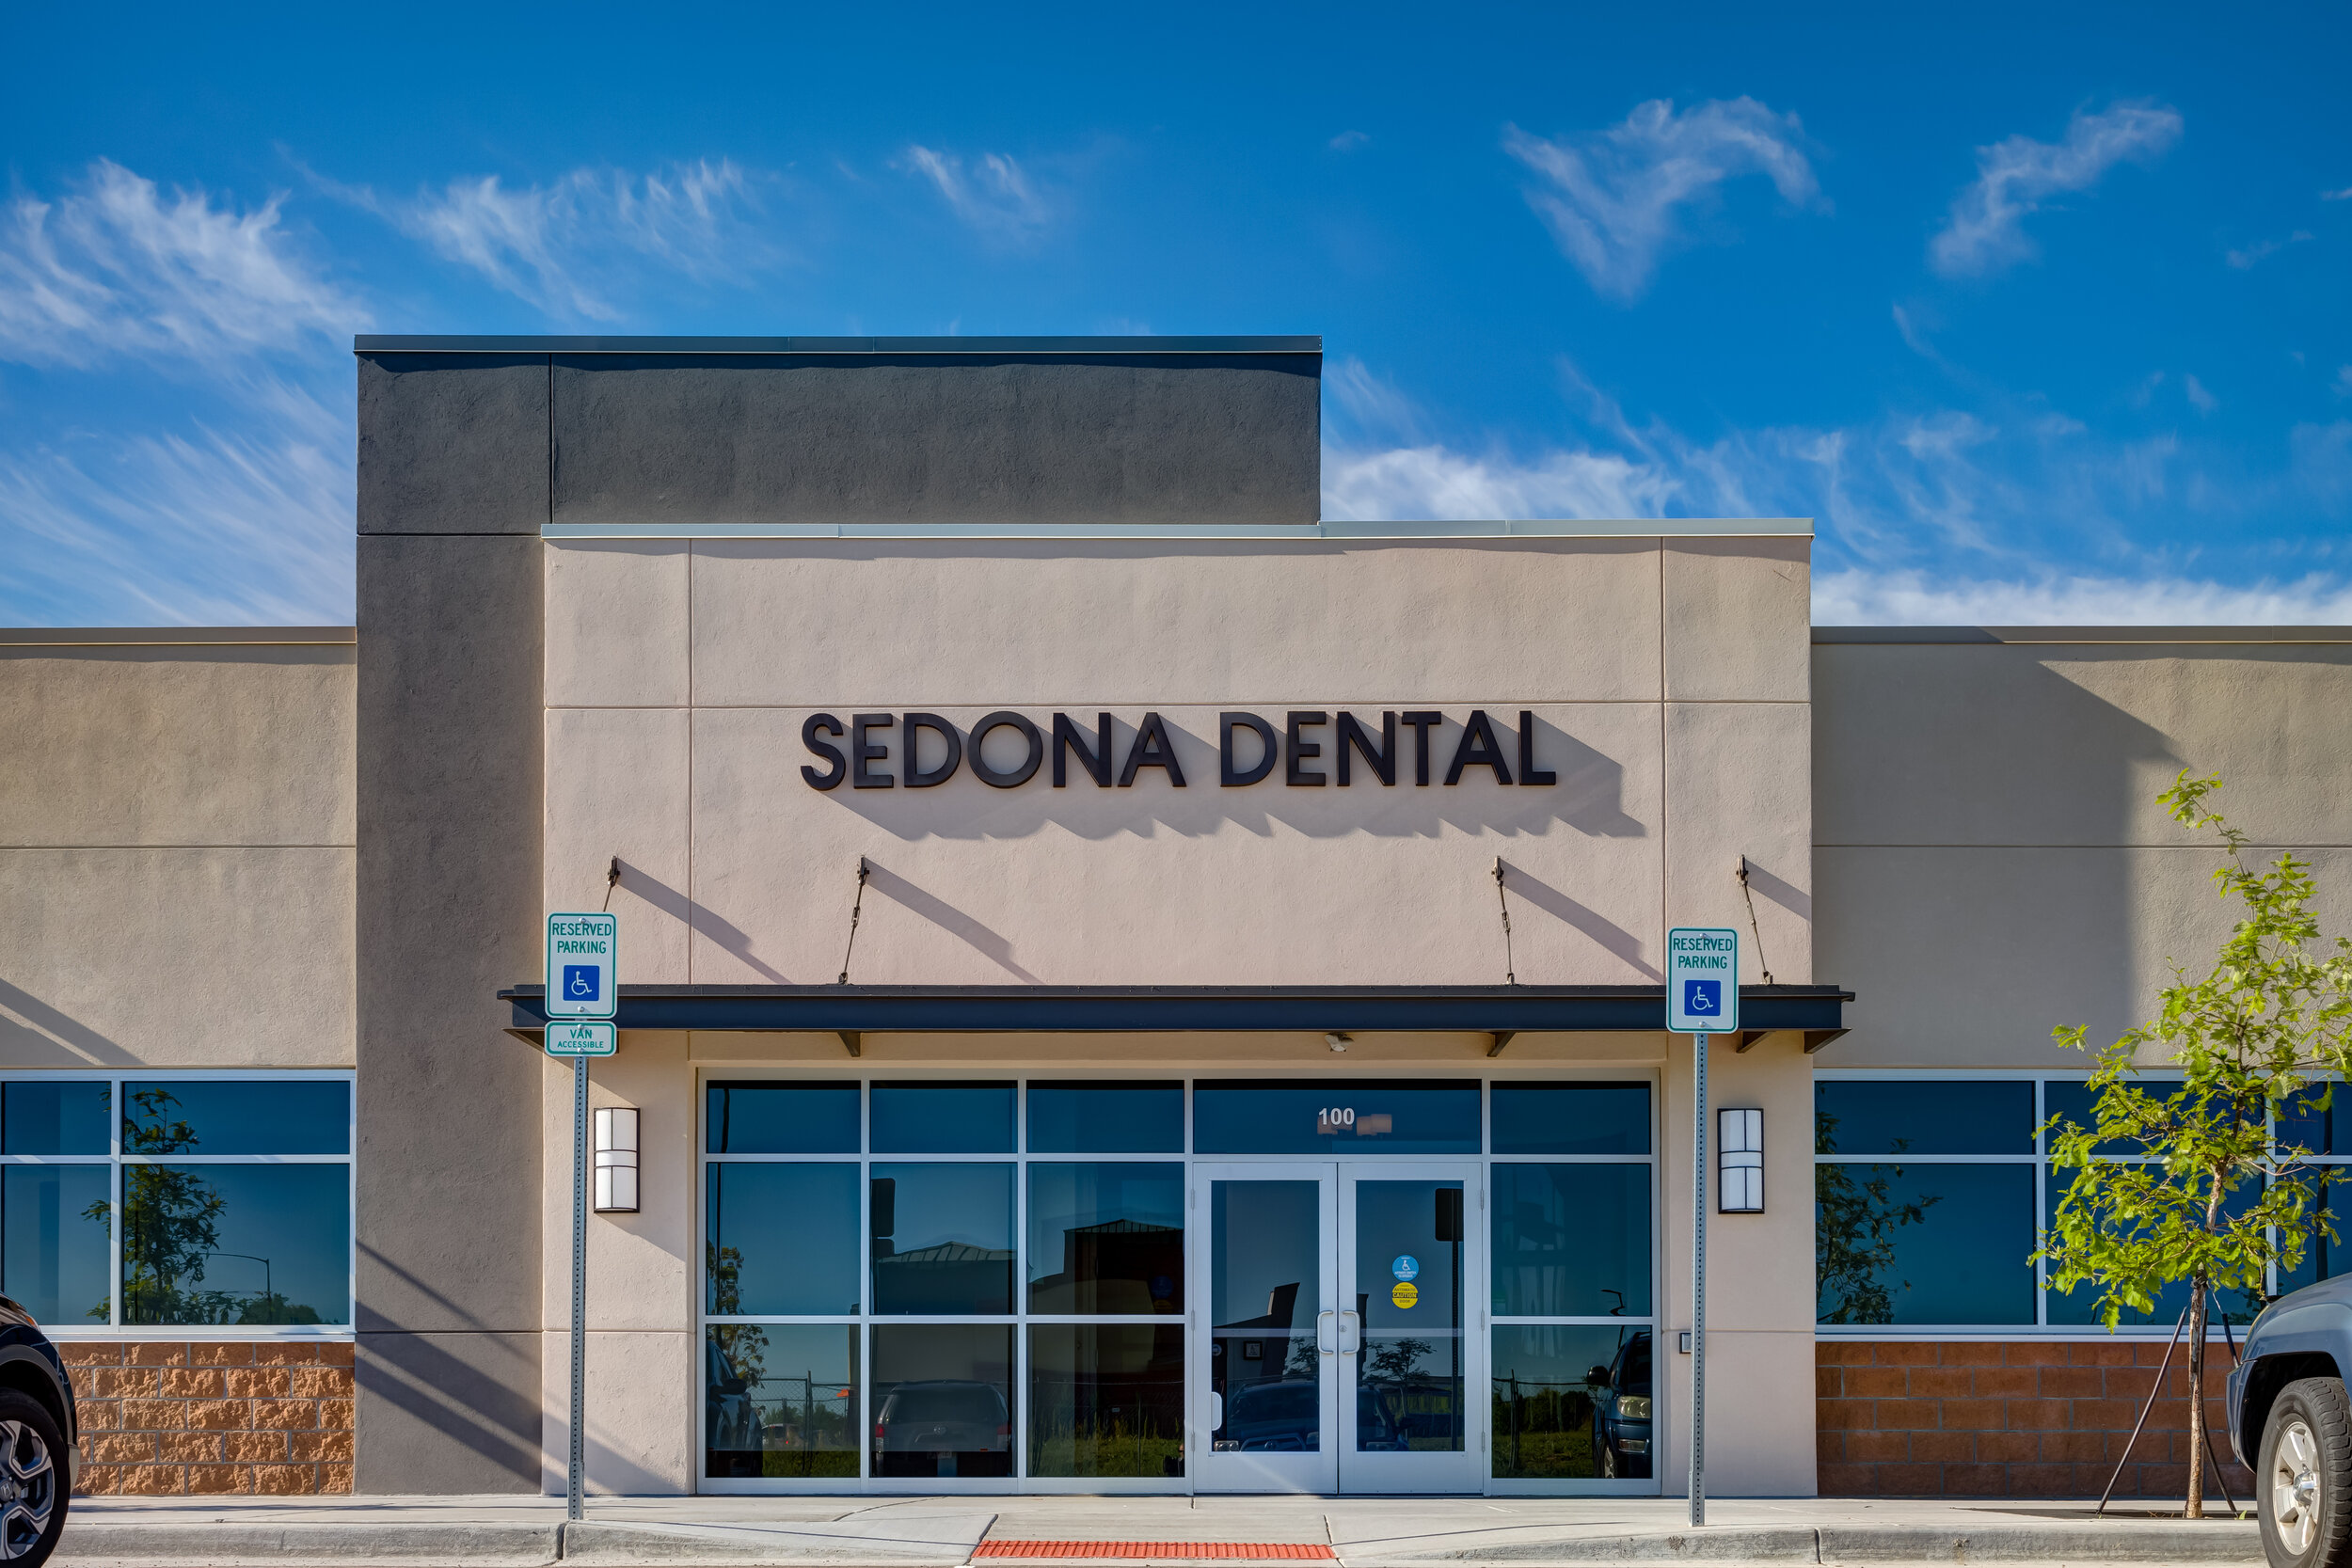 Sedona Dental Westminster Colorado